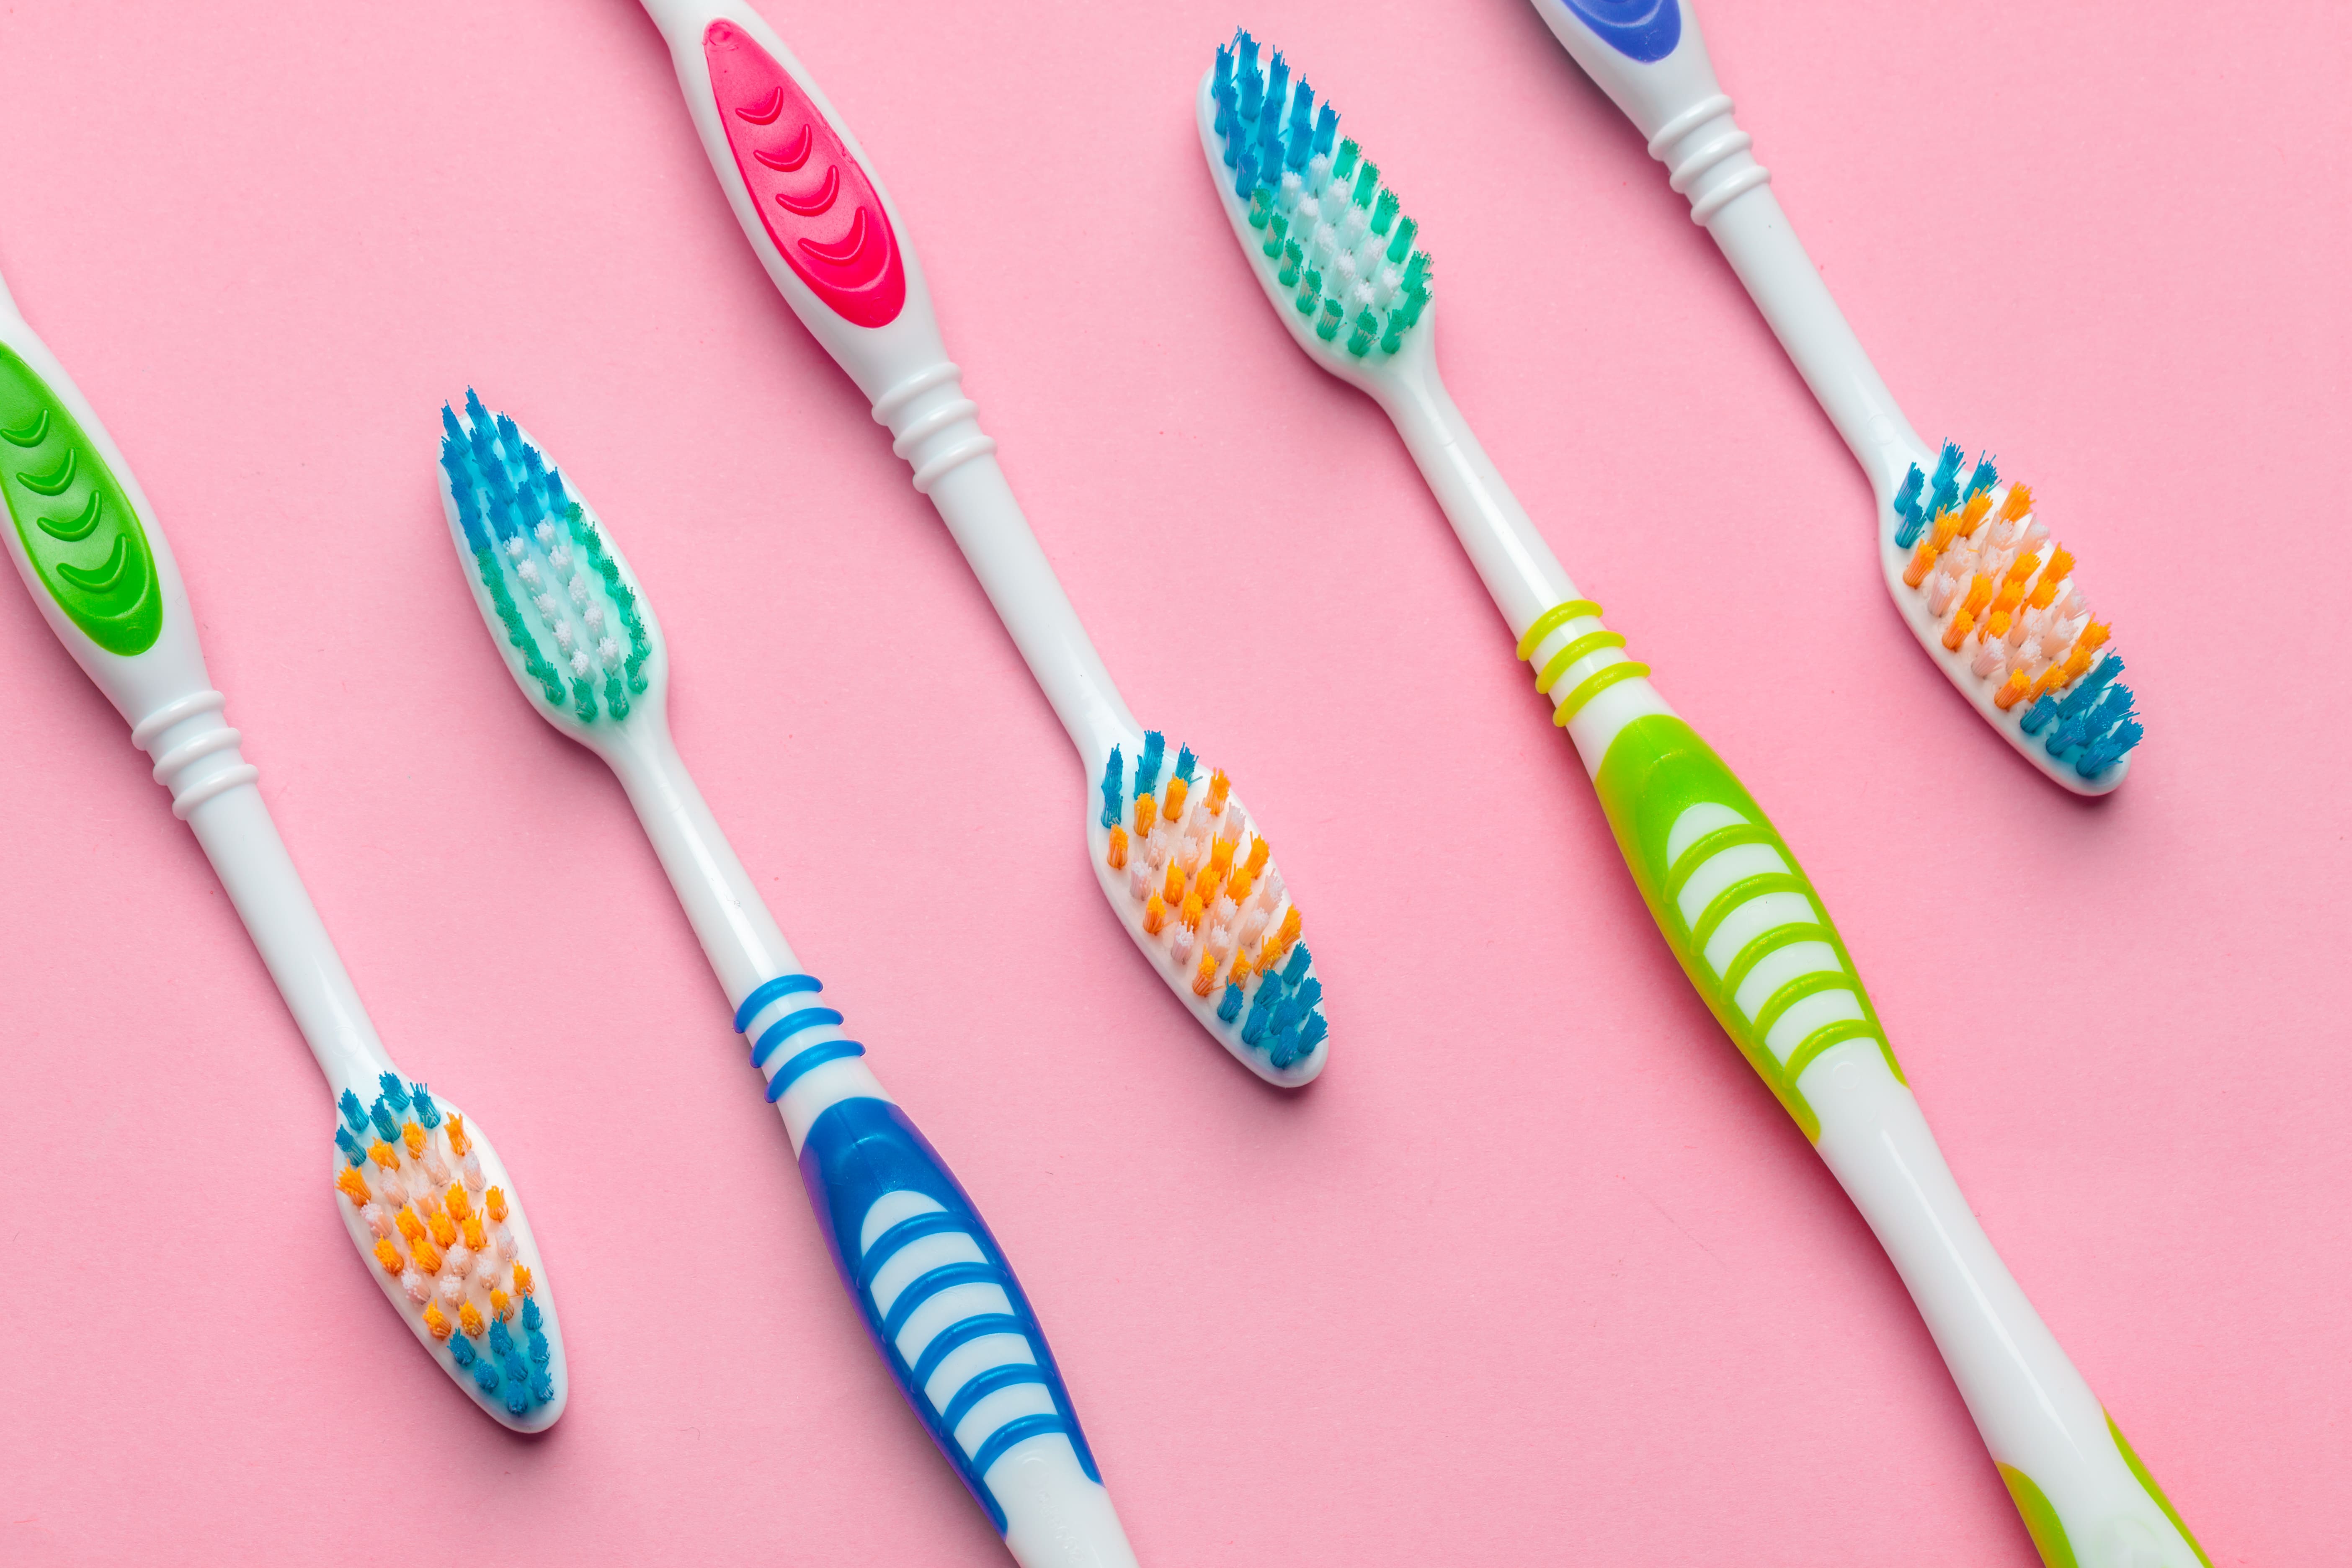 Cepillos de dientes: consejos para elegir el más adecuado para tus